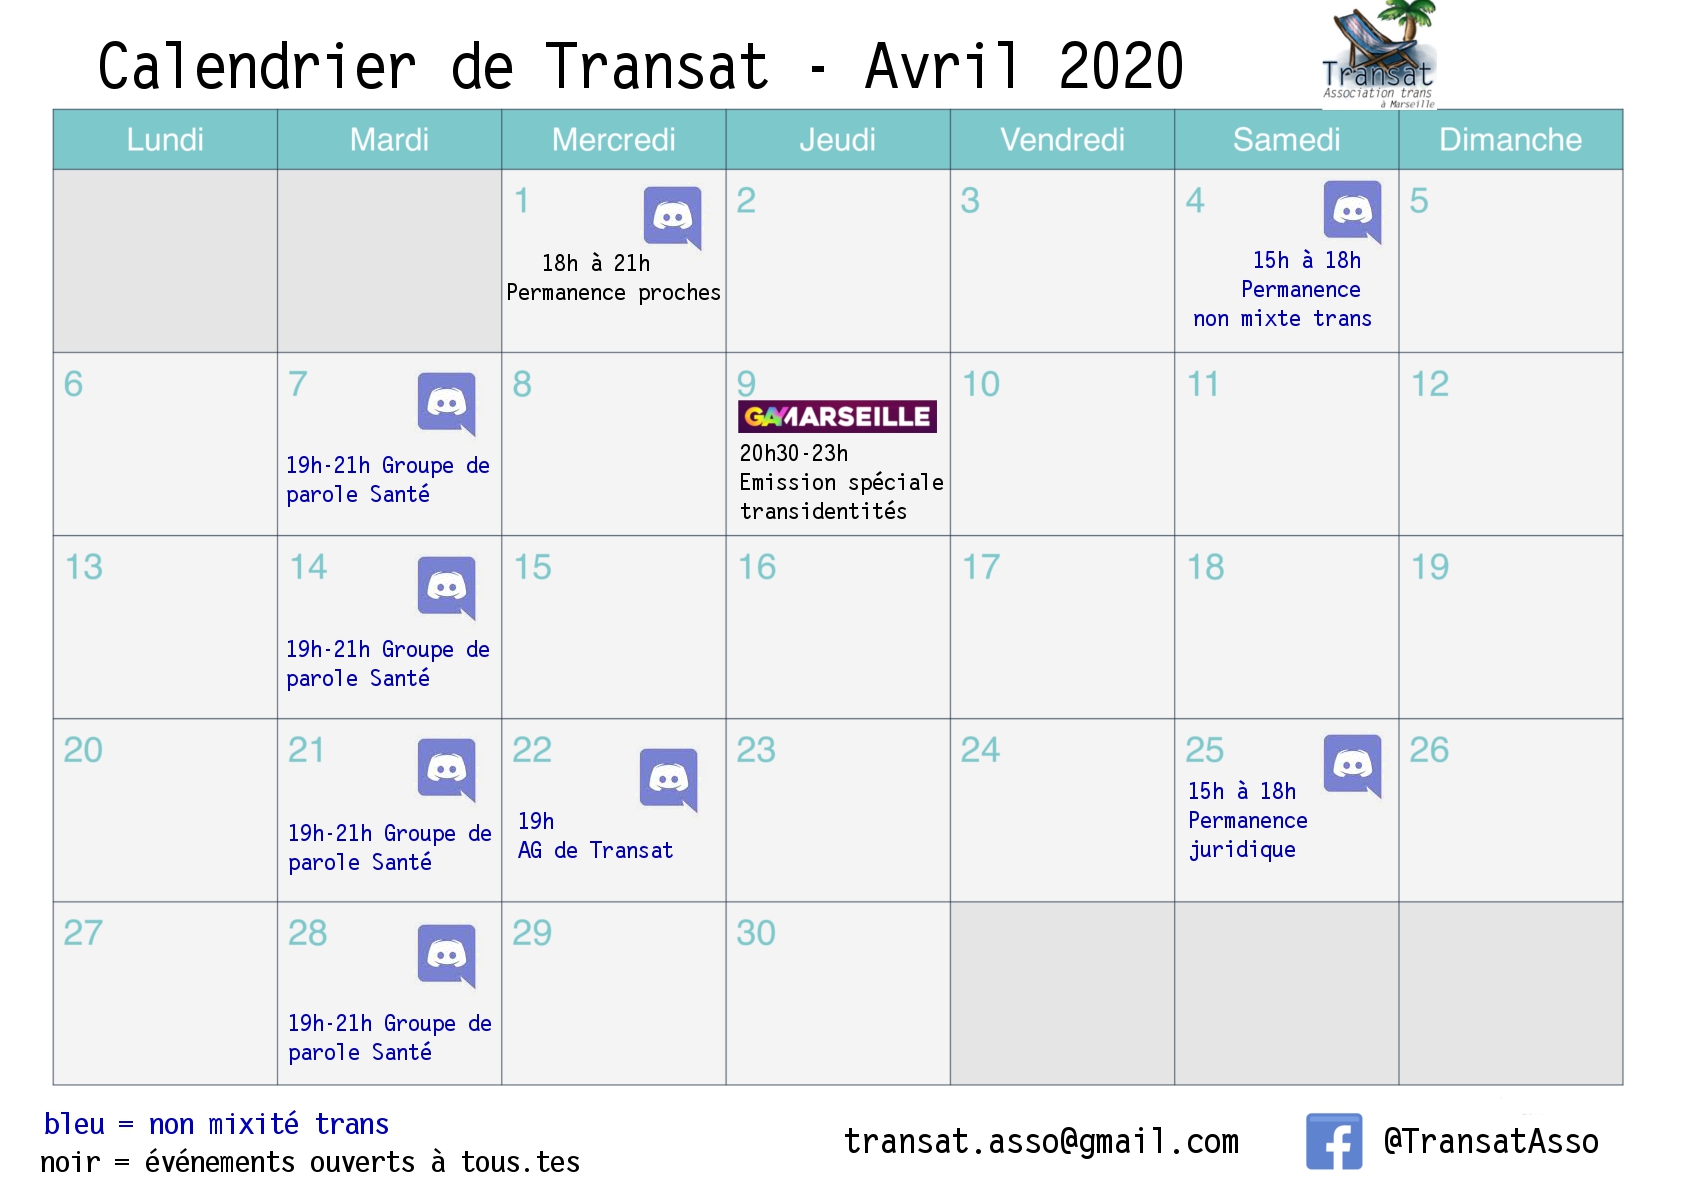 calendrier-avril-2020-transat.jpg